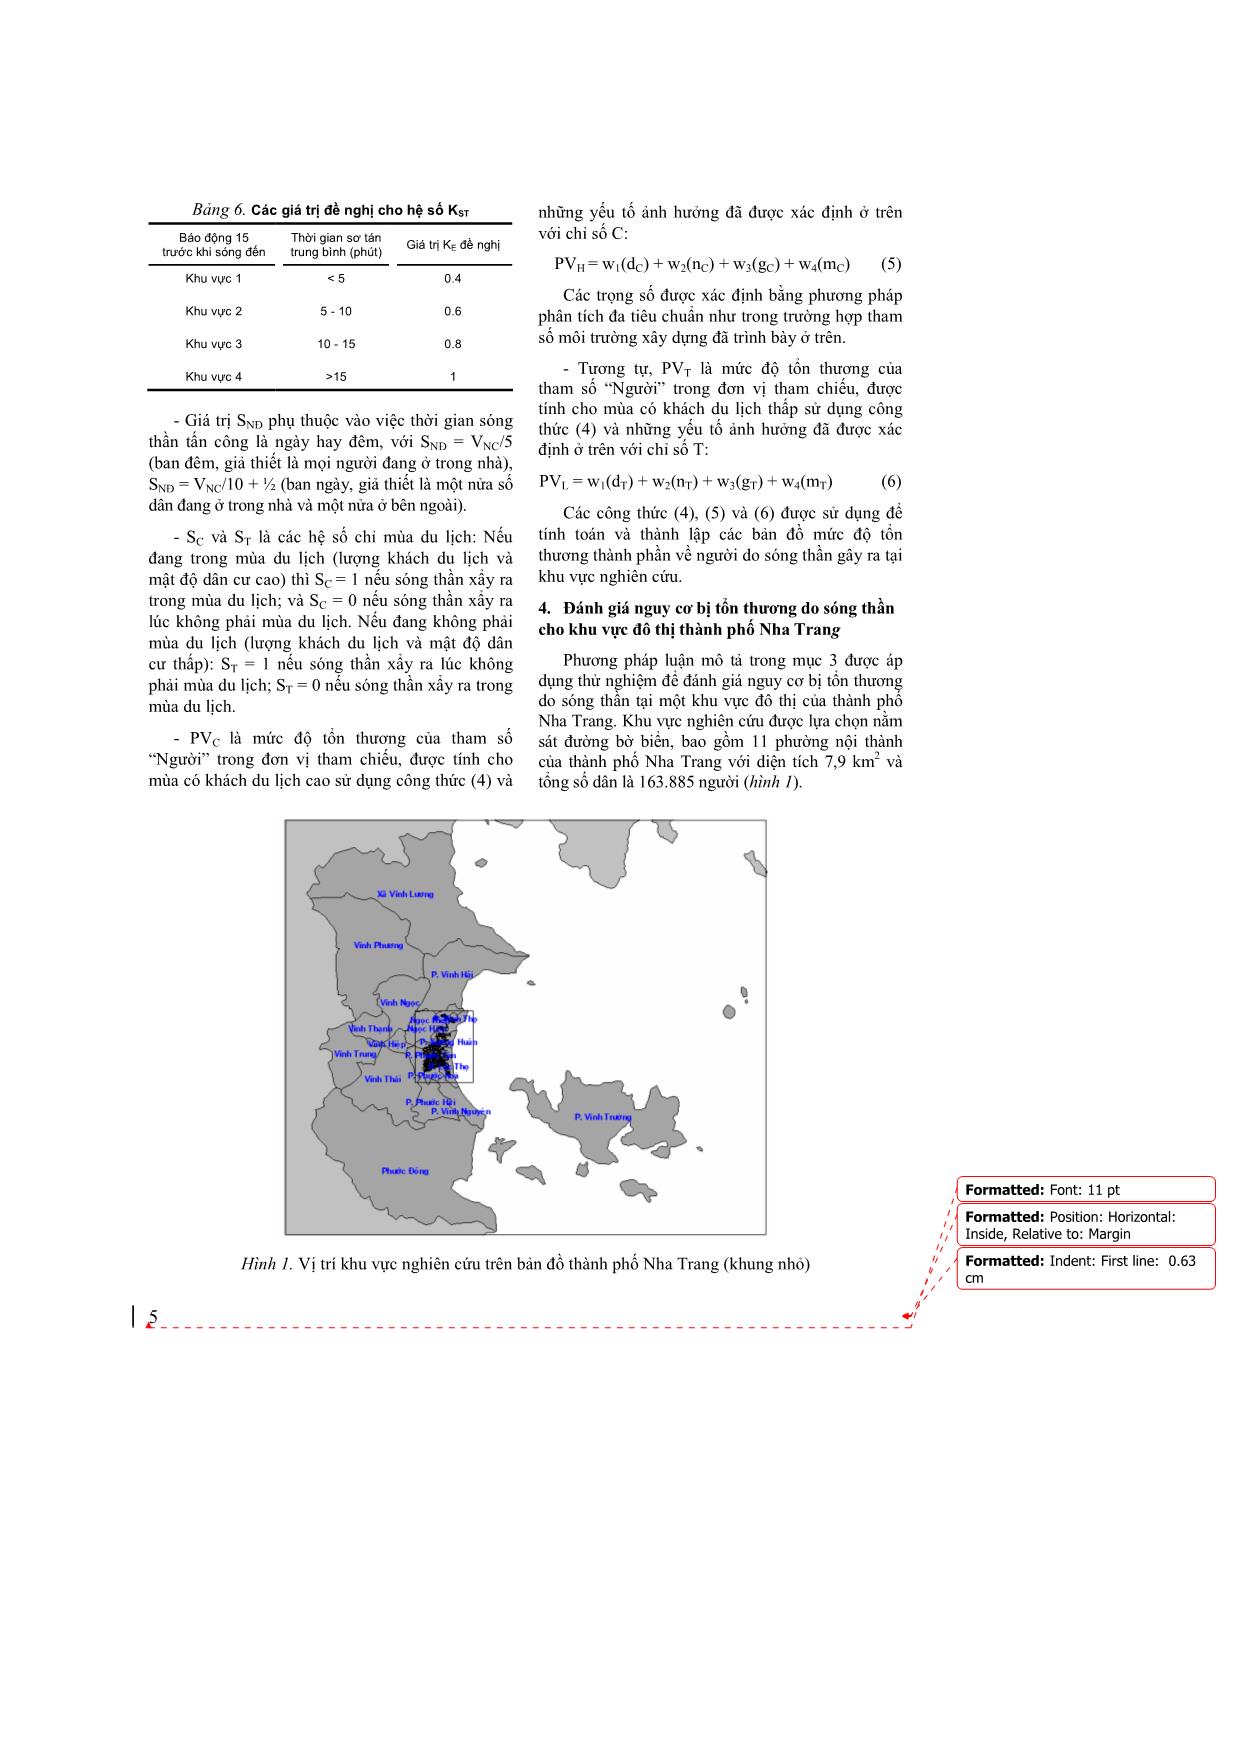 Đánh giá nguy cơ bị tổn thương do sóng thần cho khu vực đô thị thành phố Nha Trang trang 5